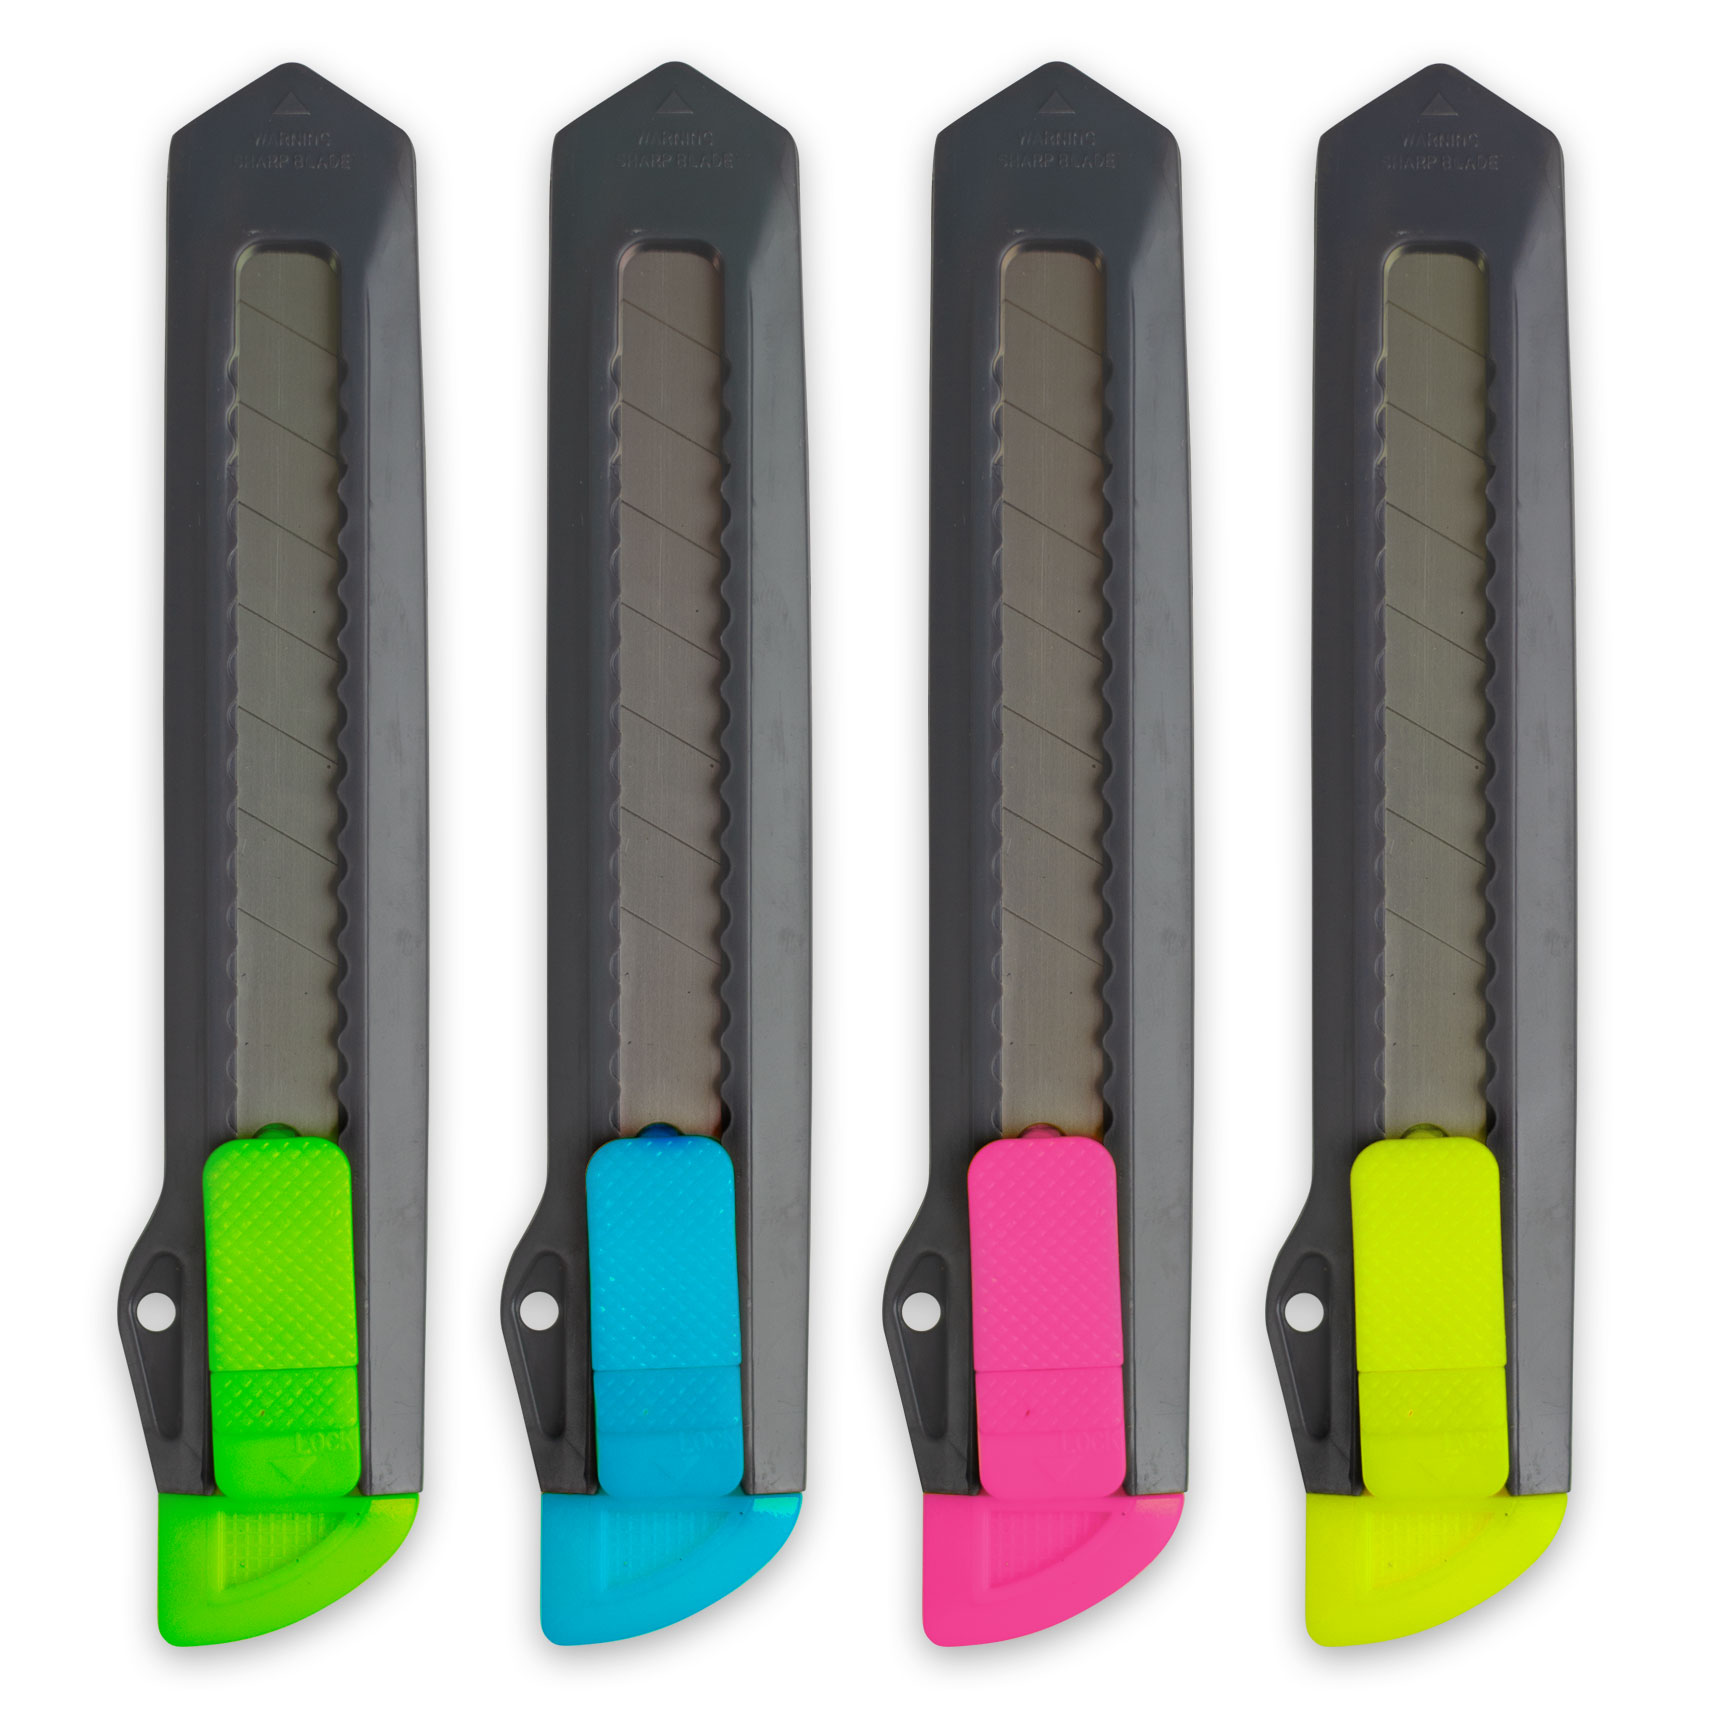 Plastový ulamovací nůž Kores 18 mm, neonový mix